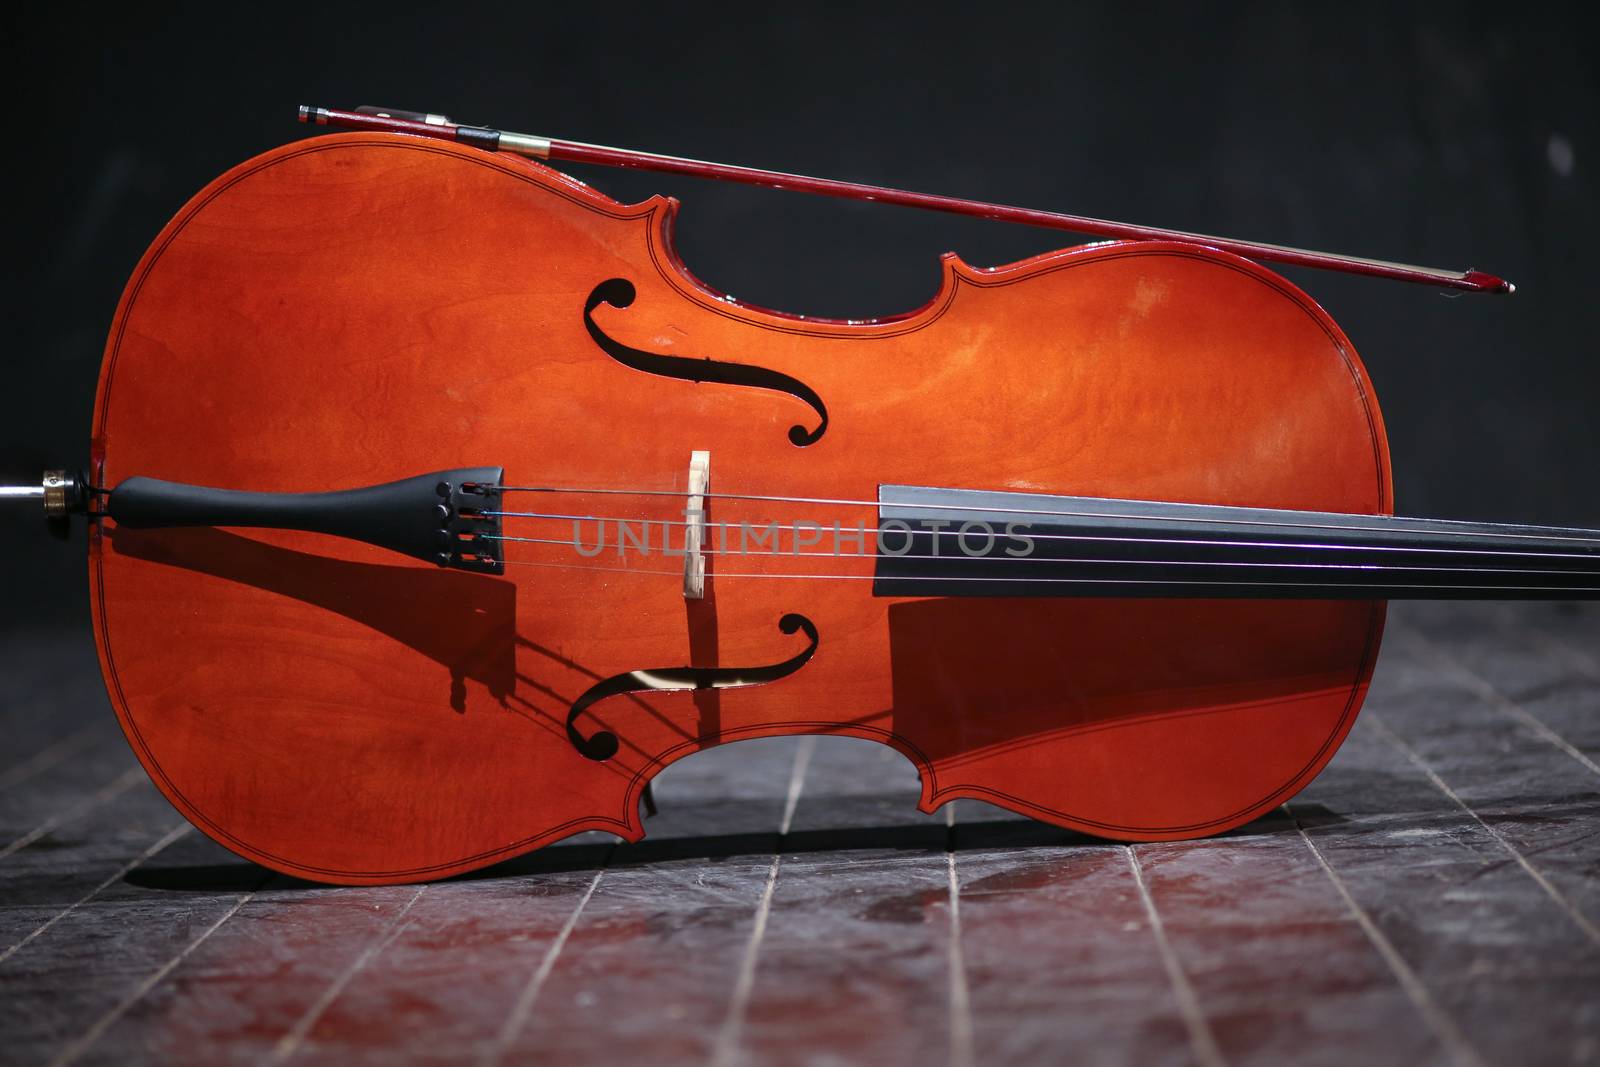 Orchestra Cello Violin by haiderazim